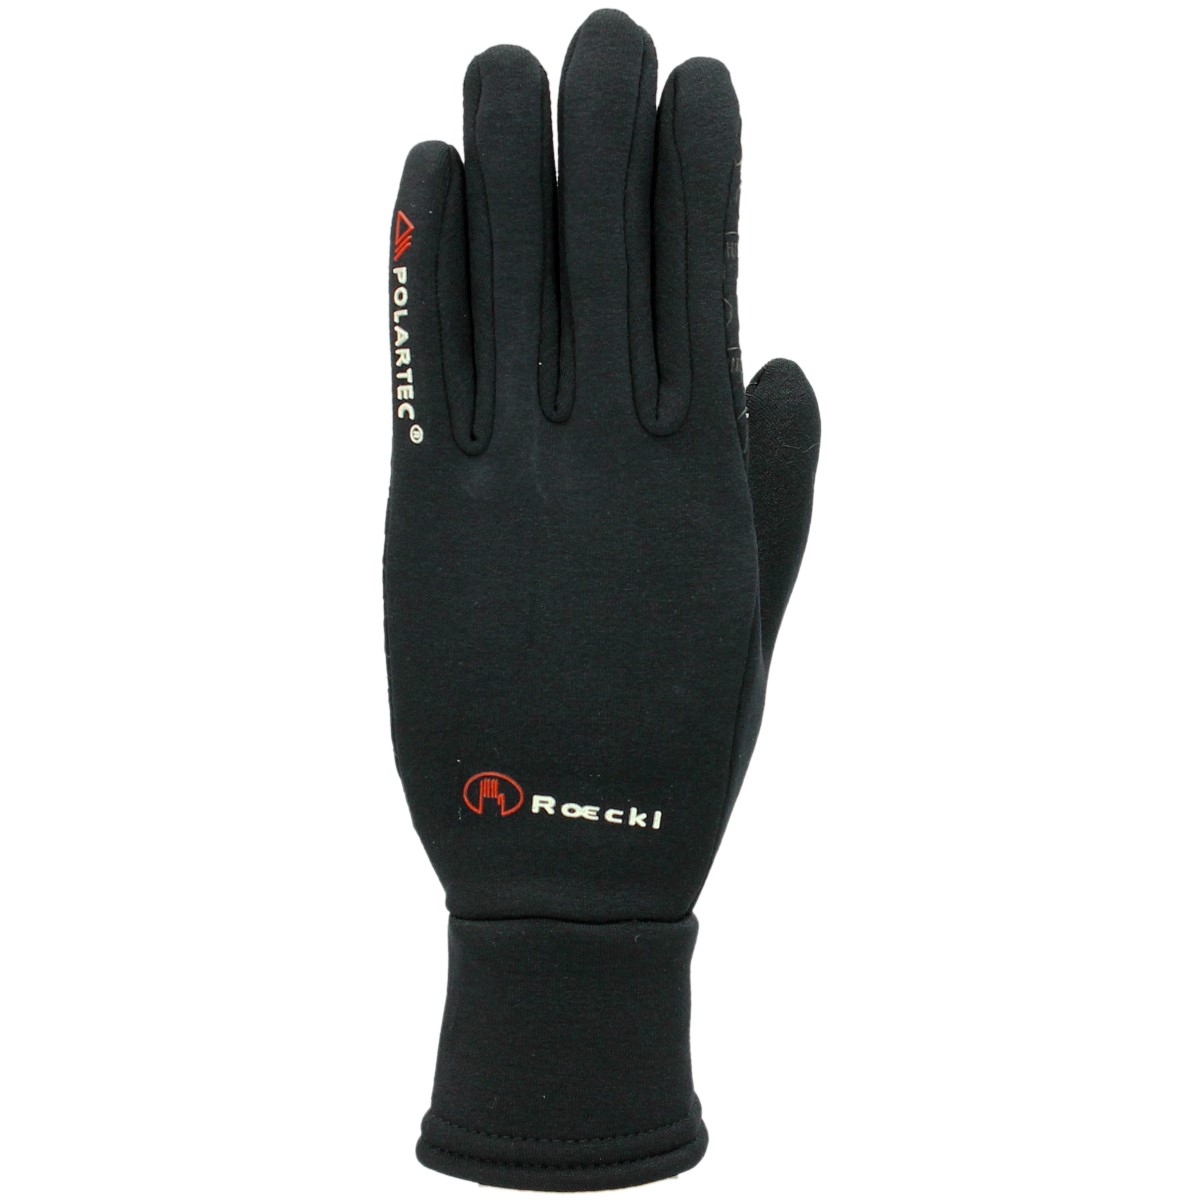 Handschoenen Roeckl Polartec, 9 in zwart